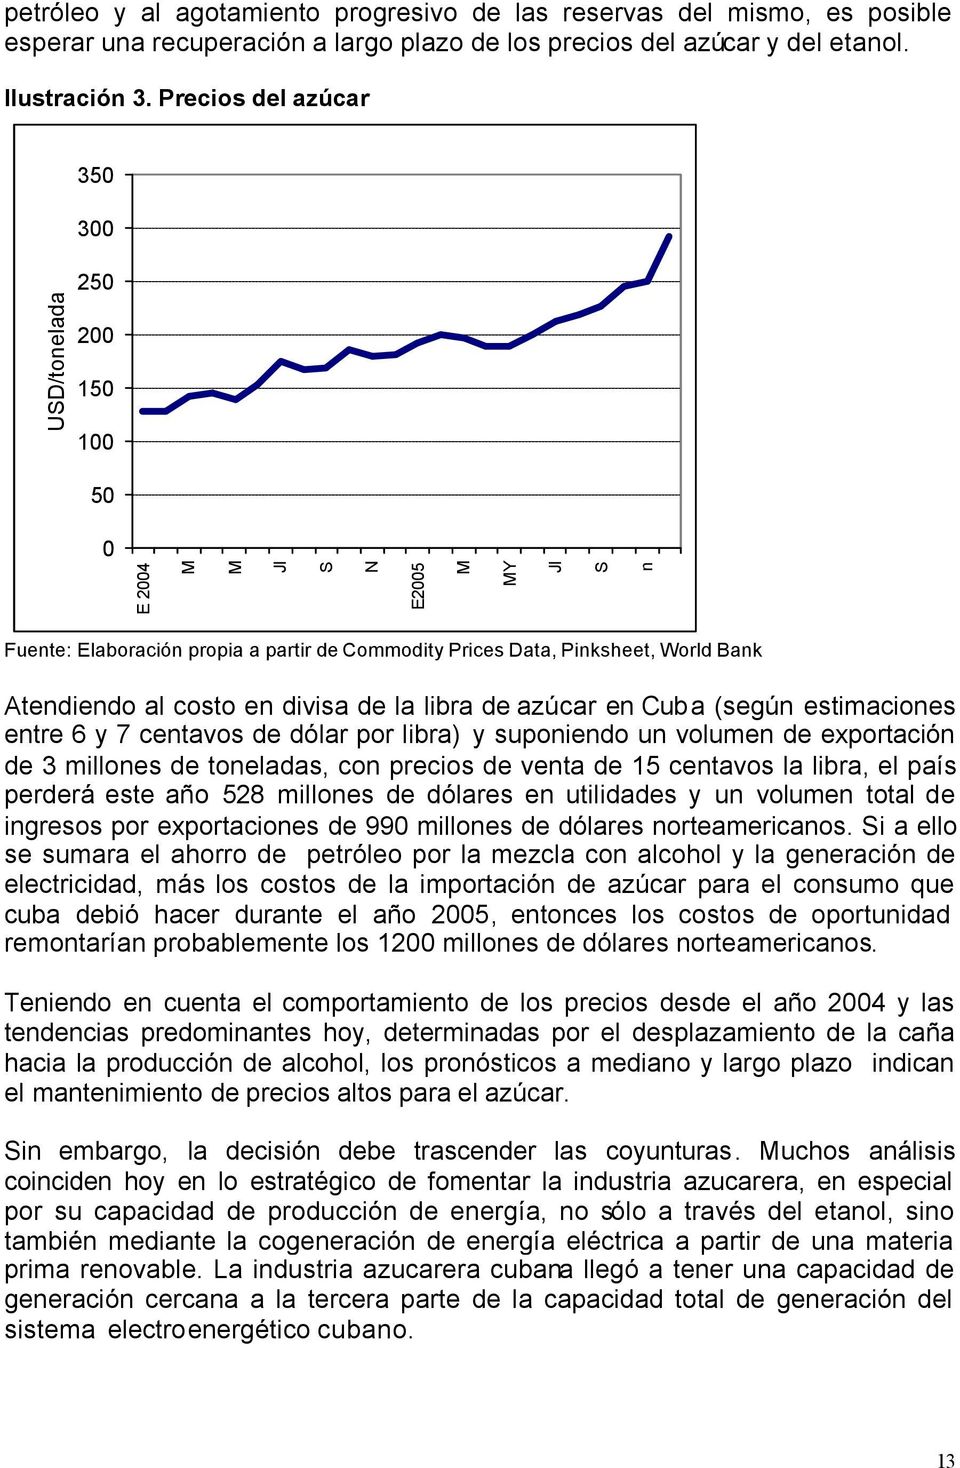 costo en divisa de la libra de azúcar en Cuba (según estimaciones entre 6 y 7 centavos de dólar por libra) y suponiendo un volumen de exportación de 3 millones de toneladas, con precios de venta de